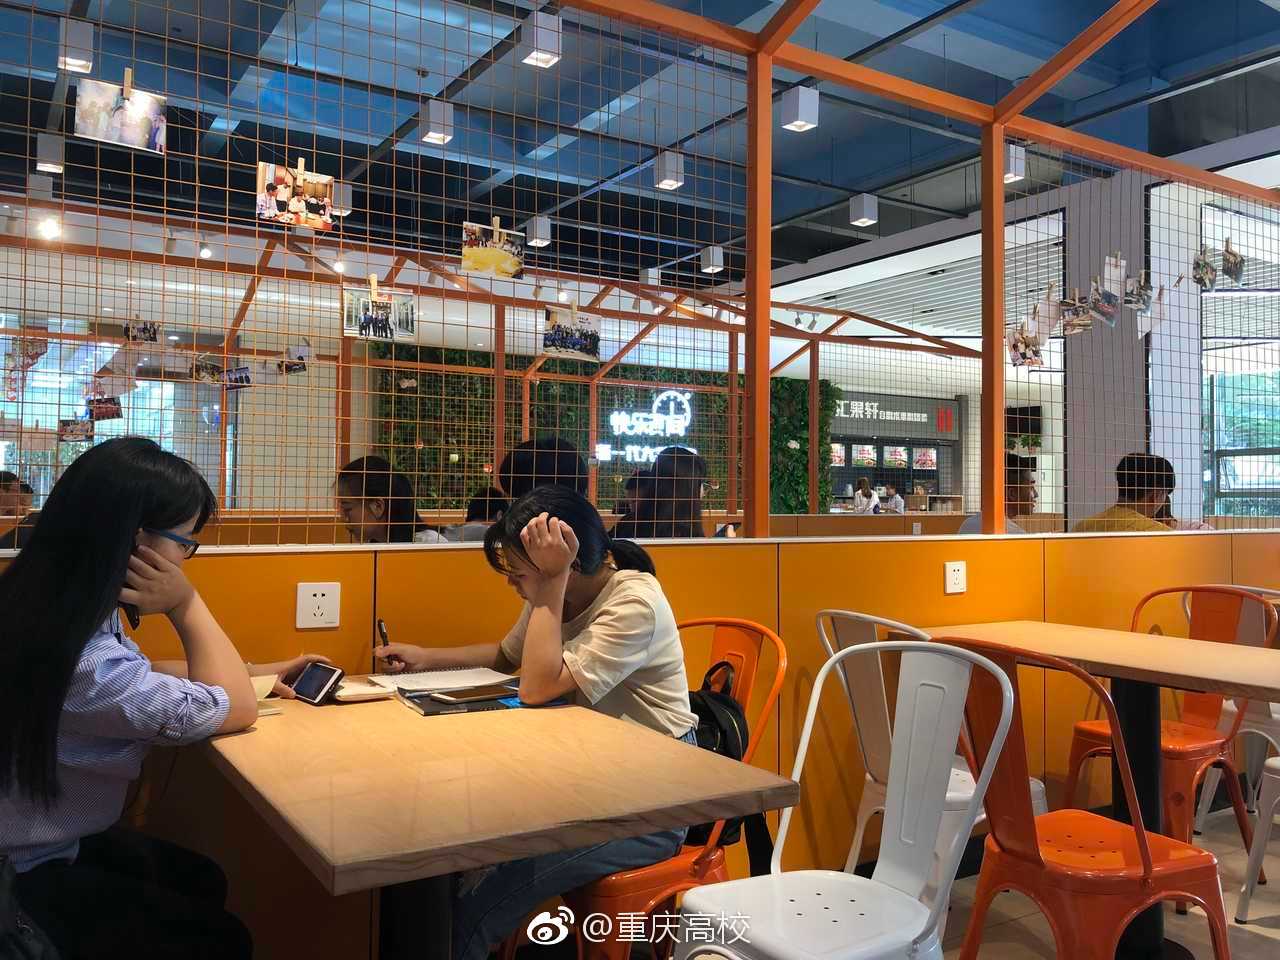 网友投稿,@长江师范学院 翻修的食堂